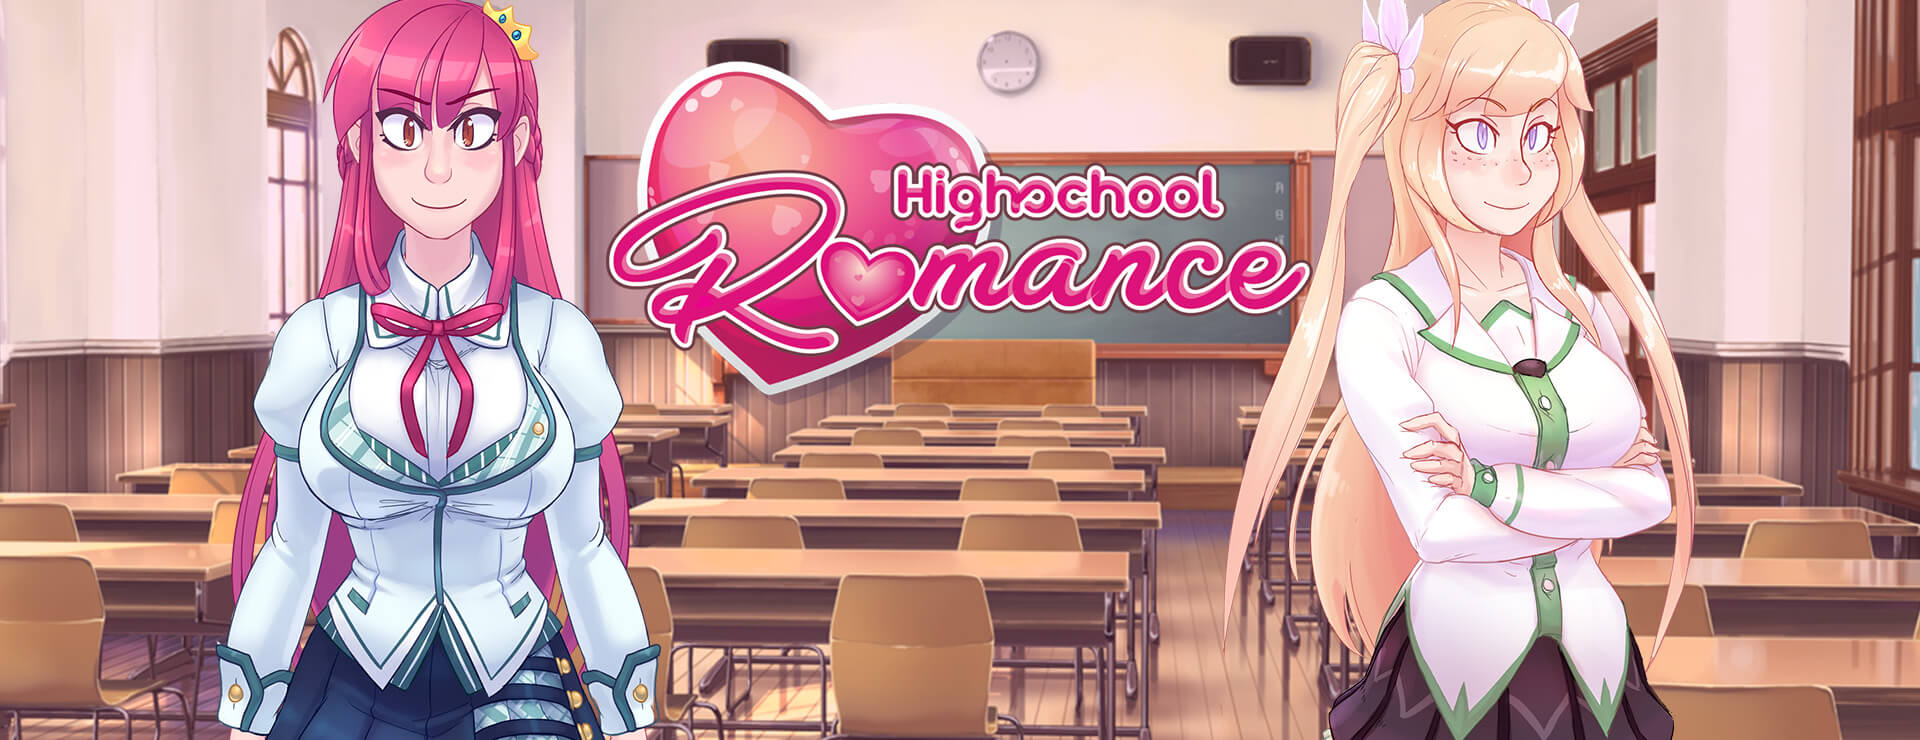 Highschool Romance - 虚拟小说 遊戲